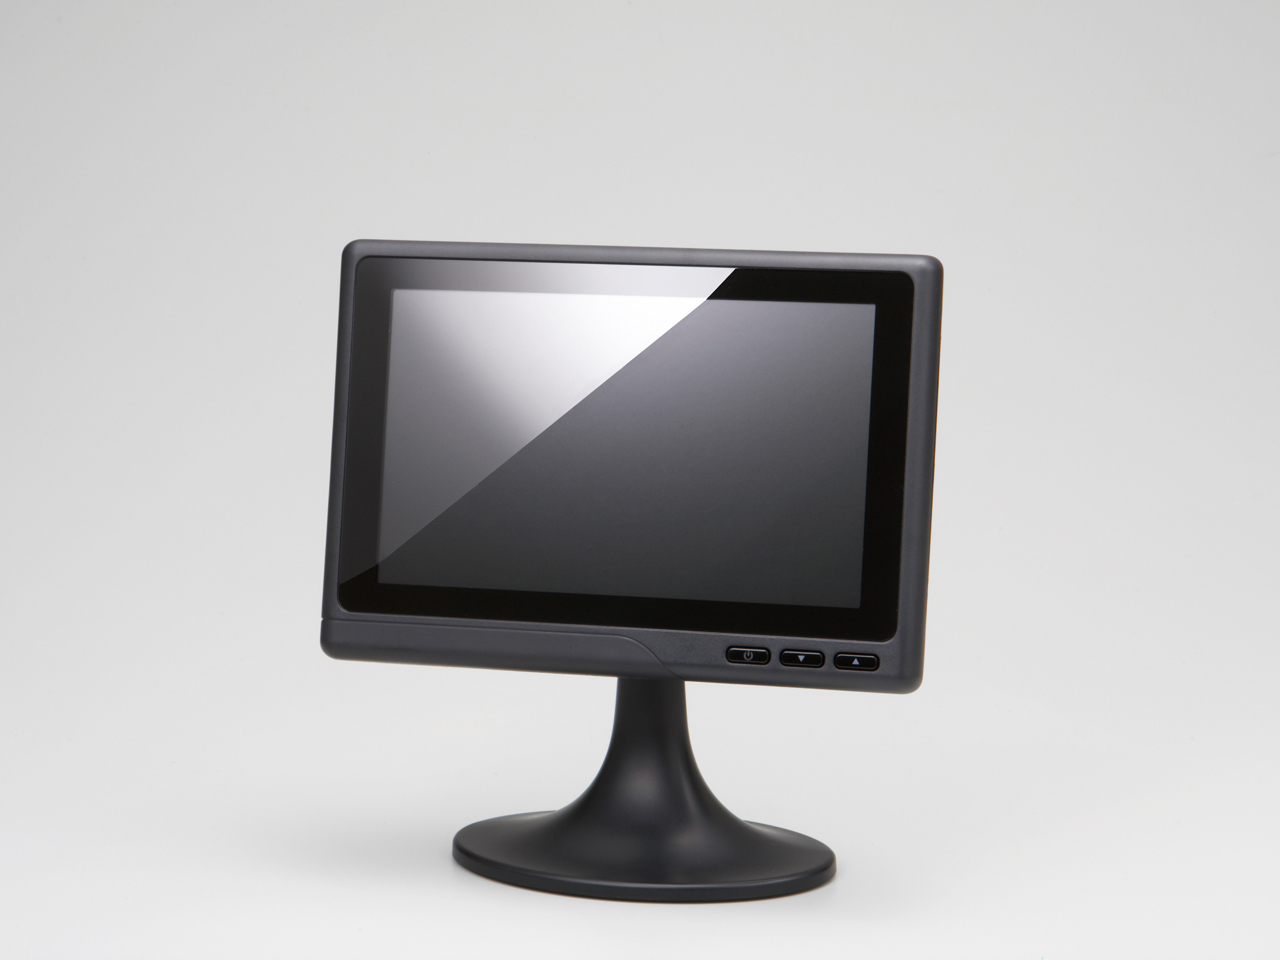 Immagine pubblicata in relazione al seguente contenuto: Buffalo lancia FTD-W71, un monitor da 7-inch collegabile su USB | Nome immagine: news9508_1.jpg